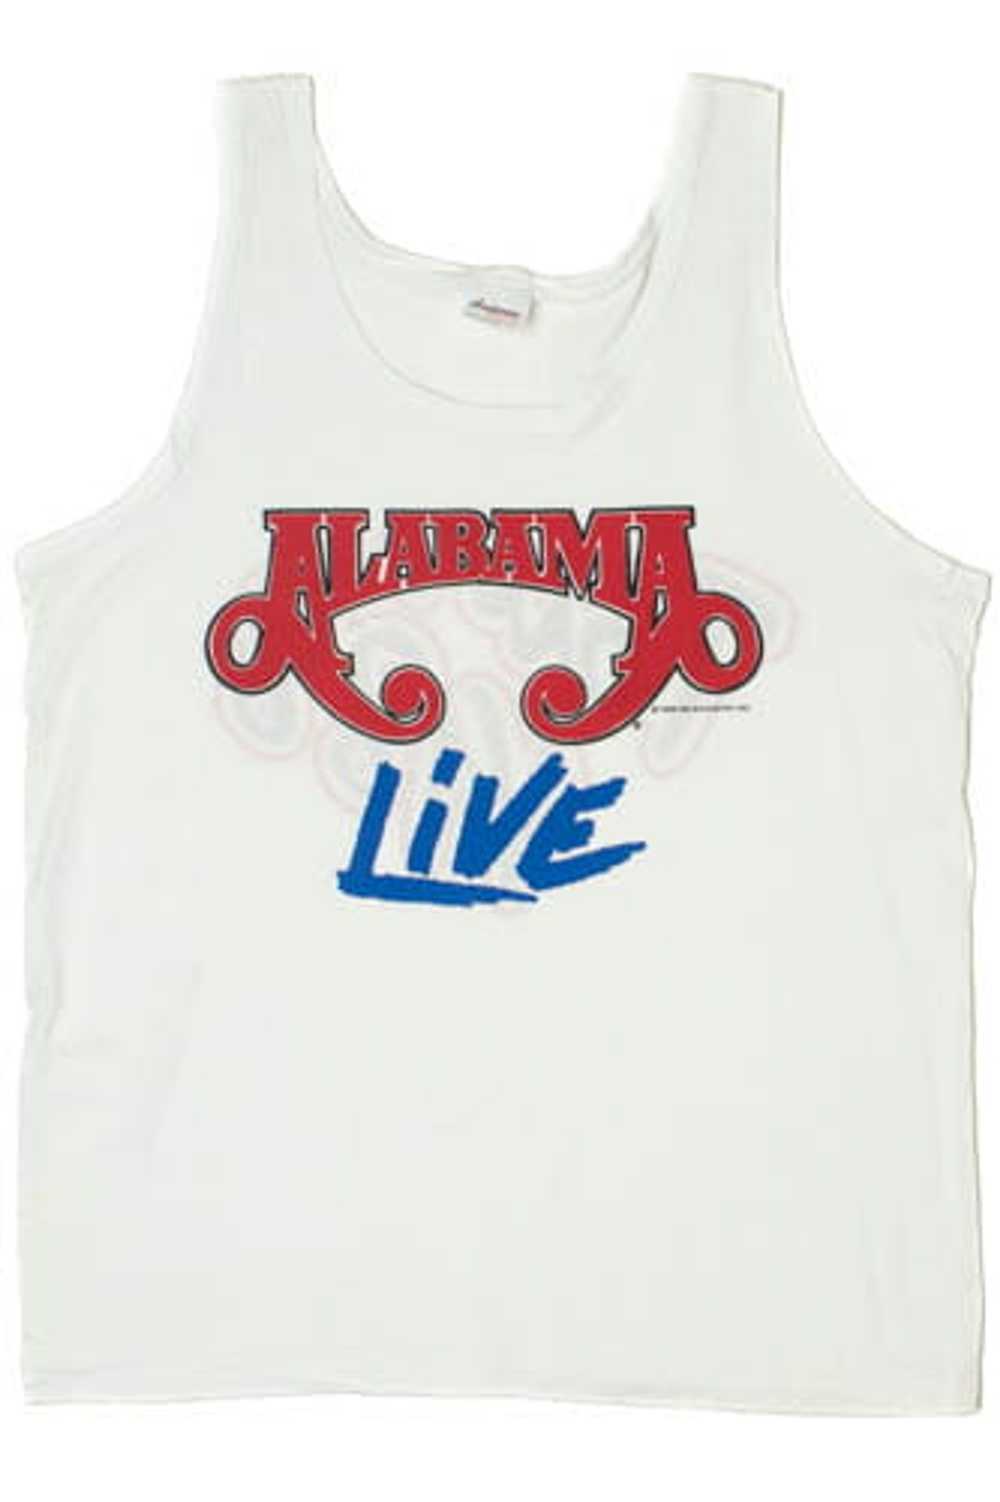 Vintage Deadstock Alabama Live Tour 1988 T-Shirt … - image 1